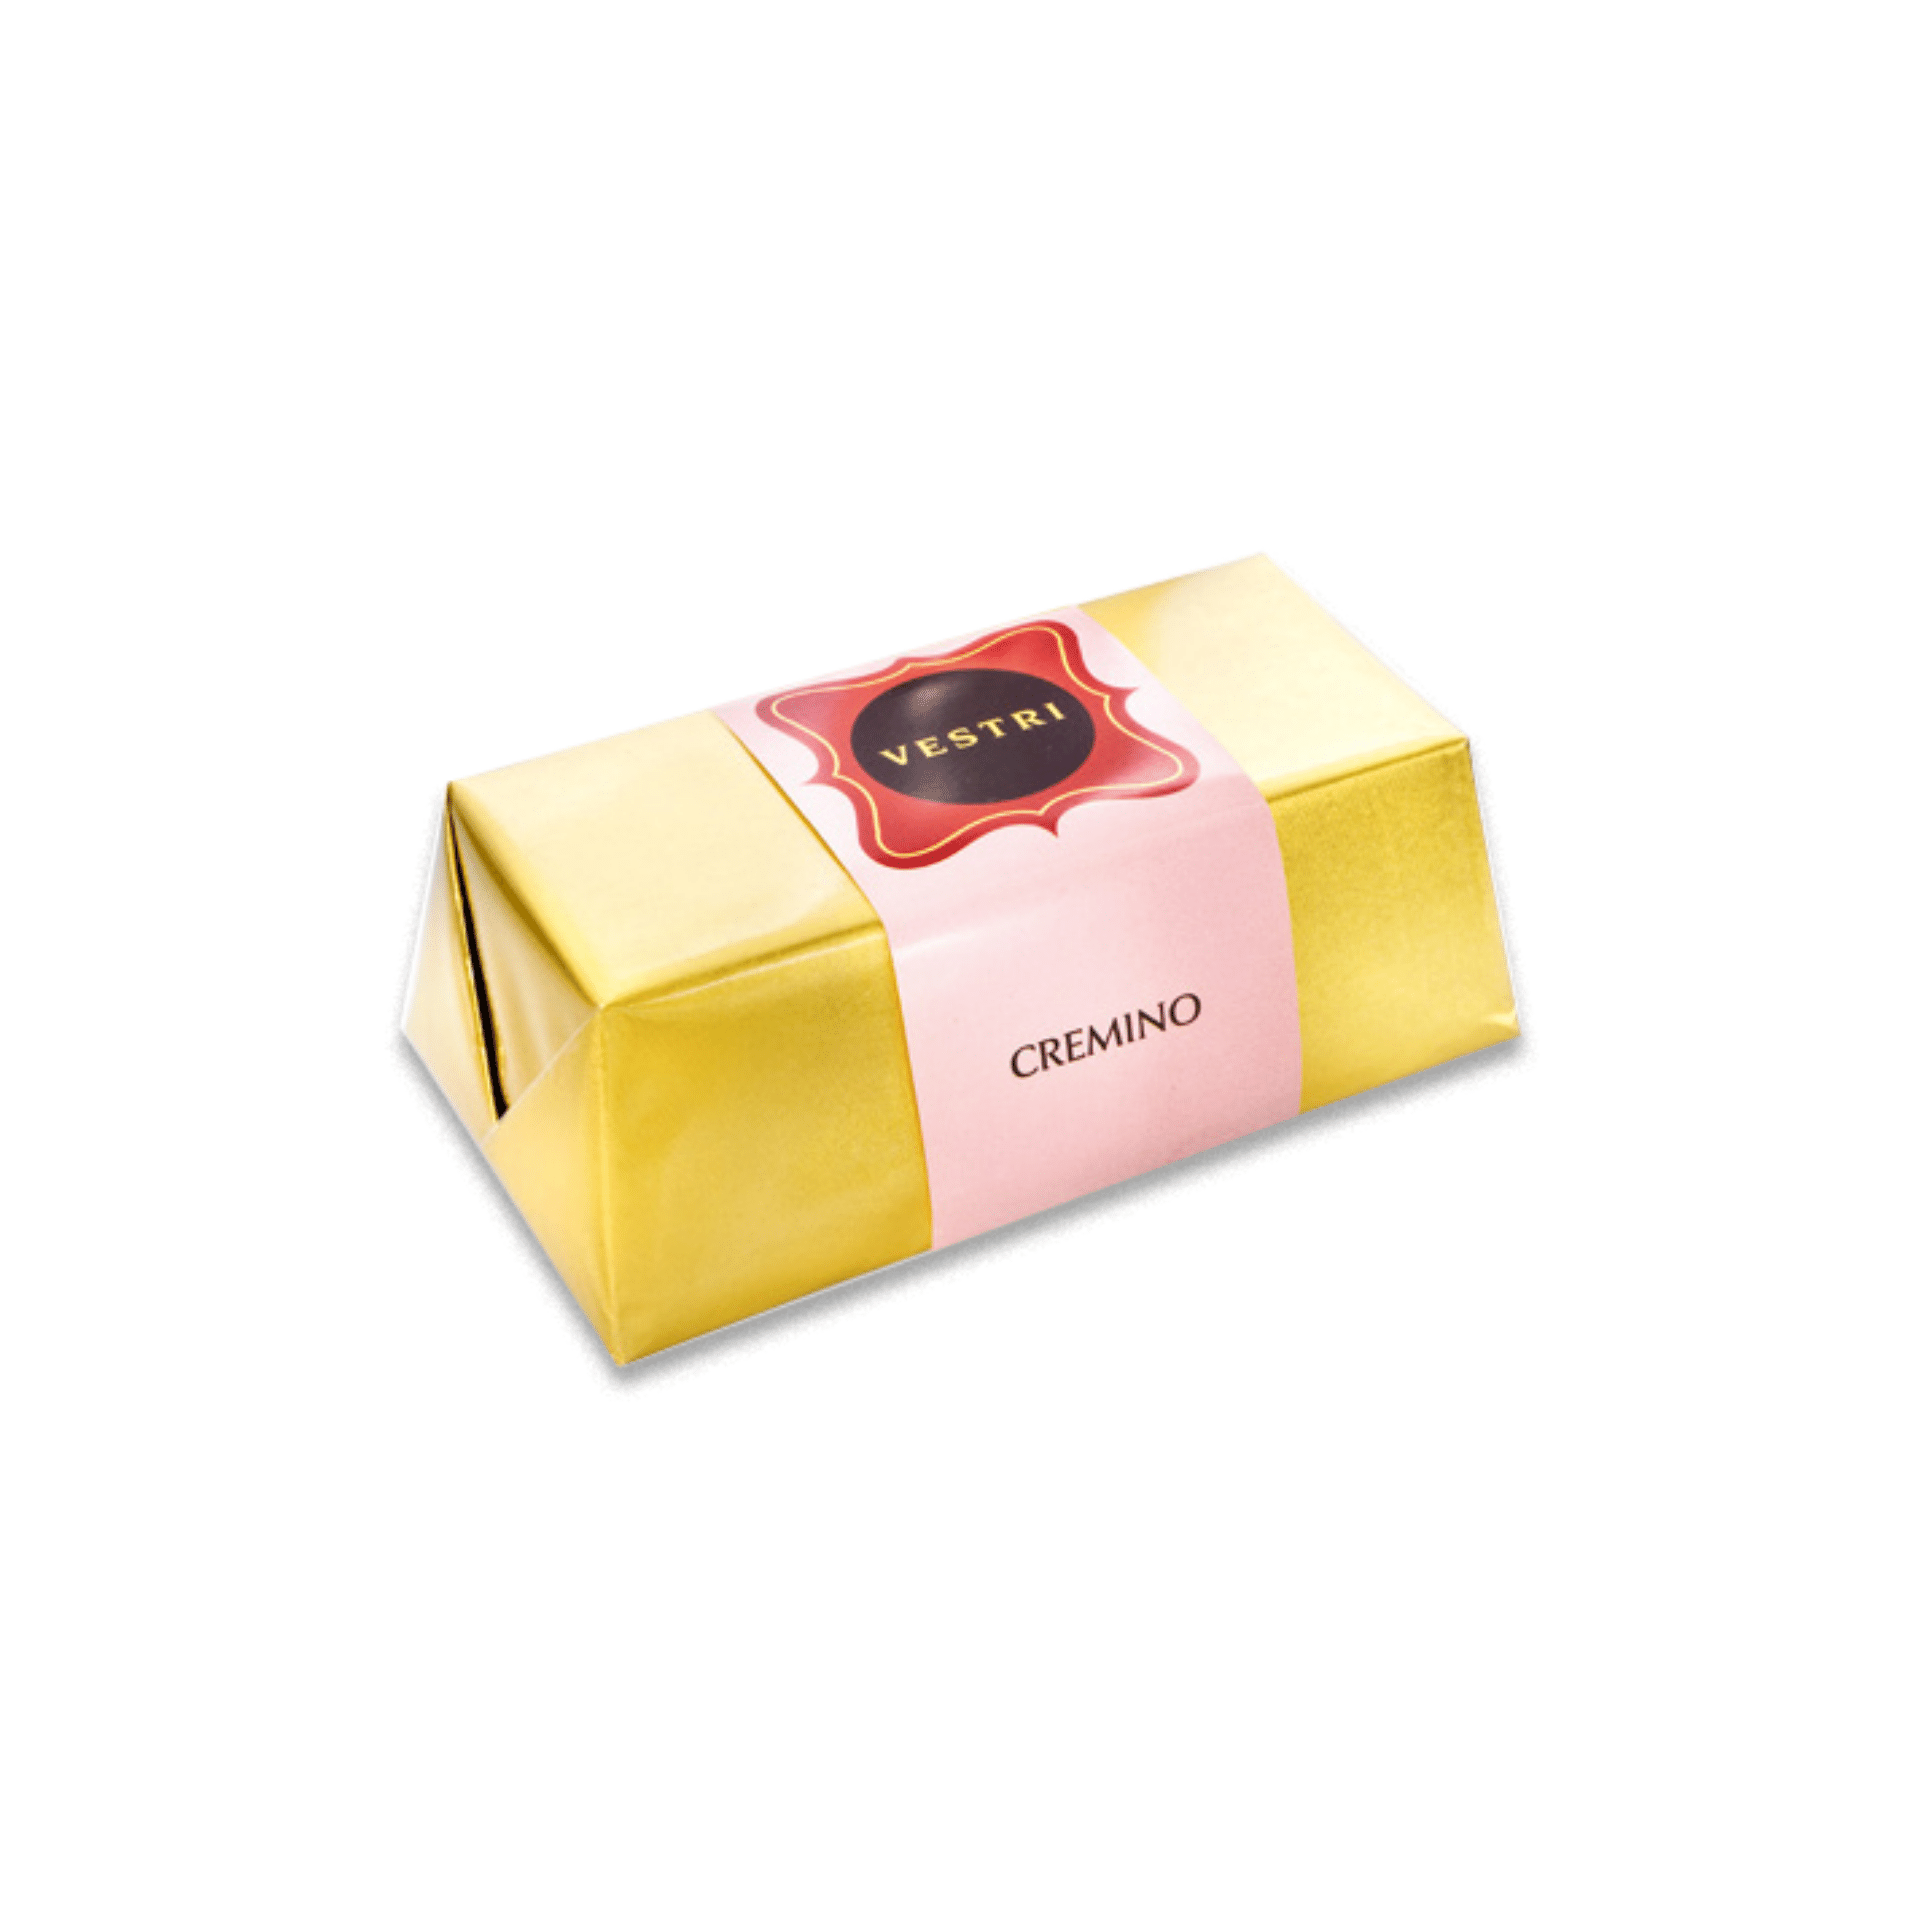 Tasty Ribbon Italian Essentials Italian Essentials Box | Gourmet Italian Gift Box | Tasty Ribbon